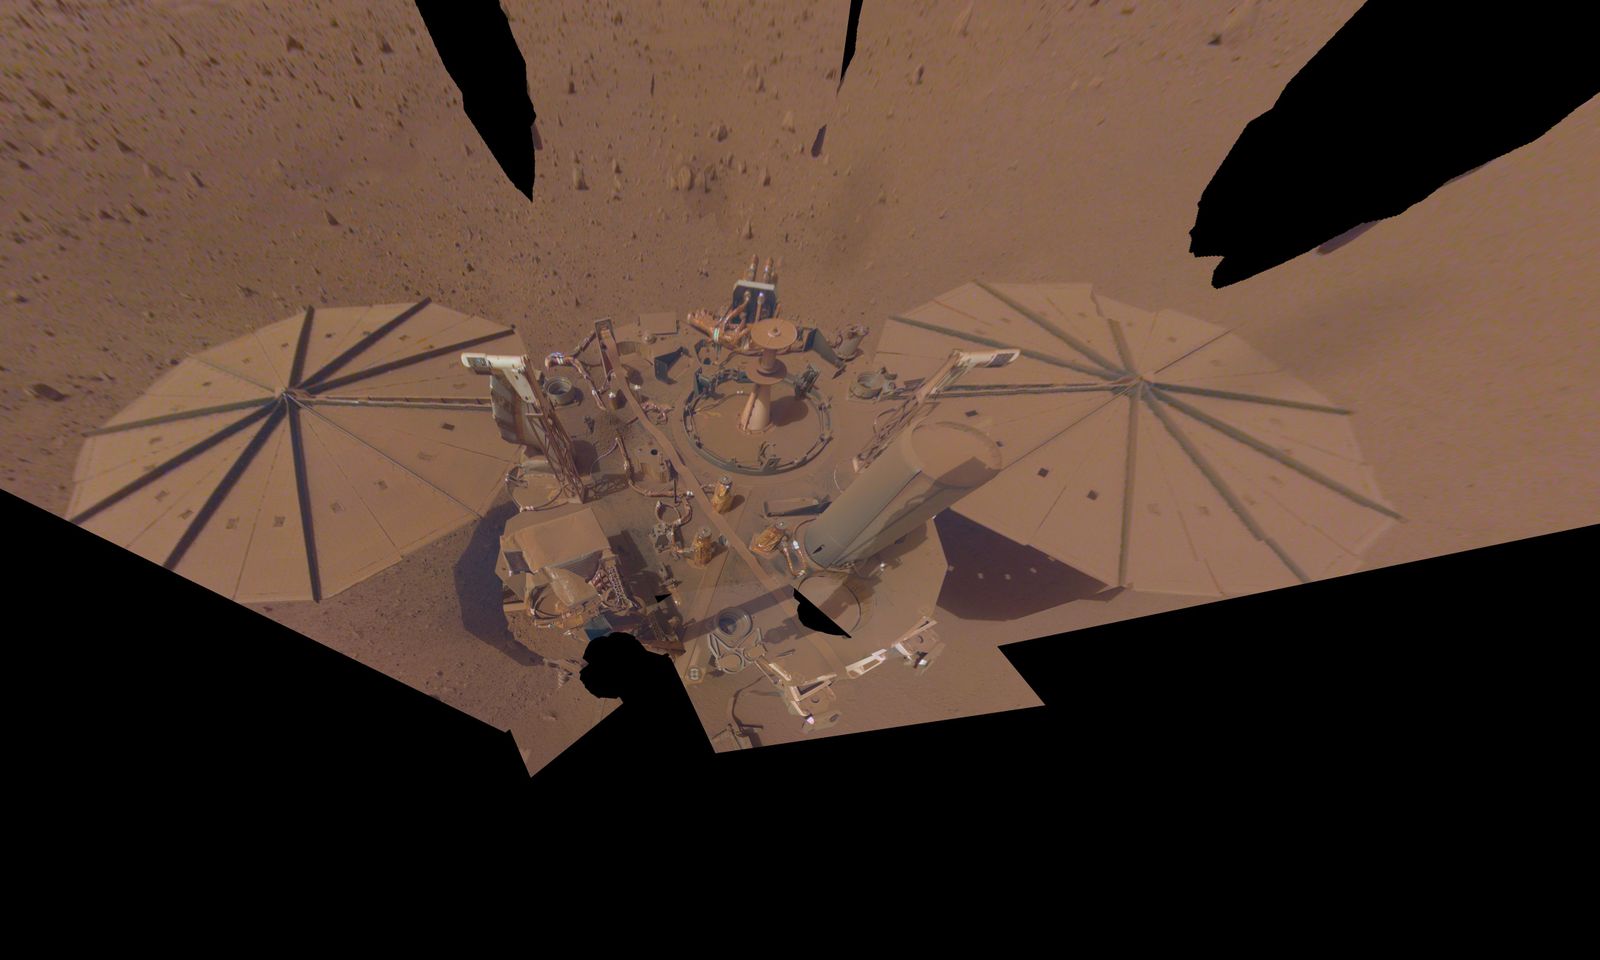 Dusty InSight Mars Lander Takes Its Final Selfie